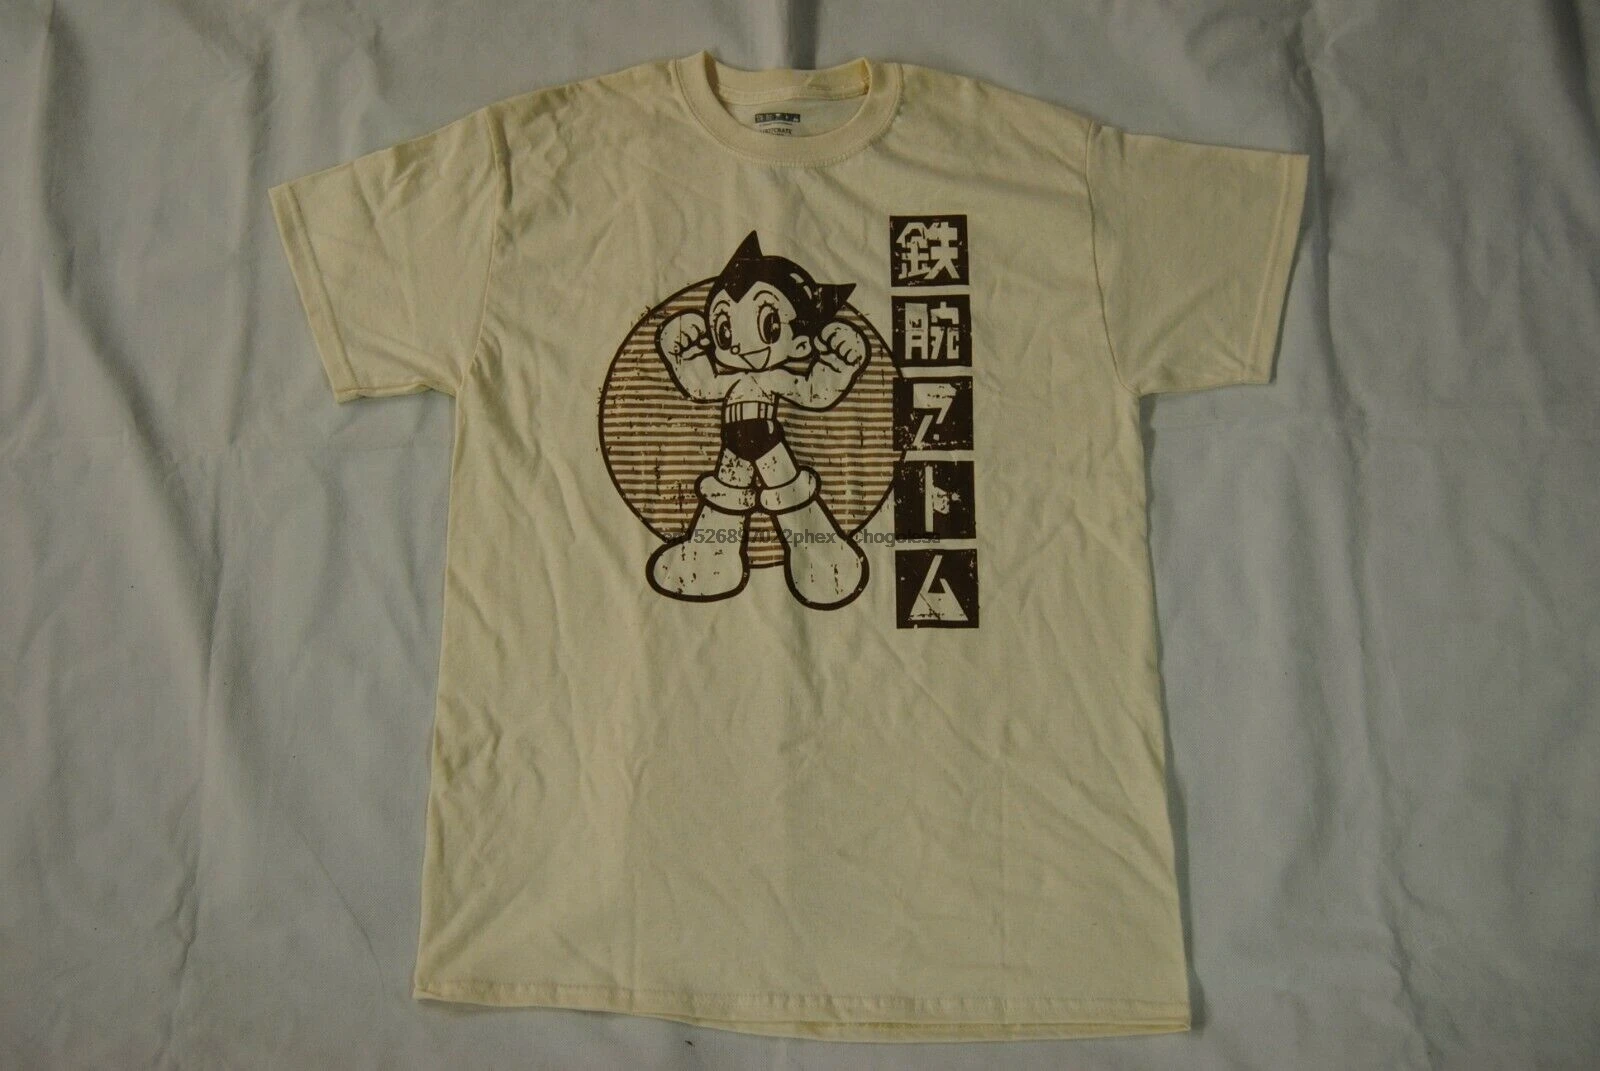 ASTRO BOY футболка с потертым логотипом новая официальная японская манга LOOTCRATE